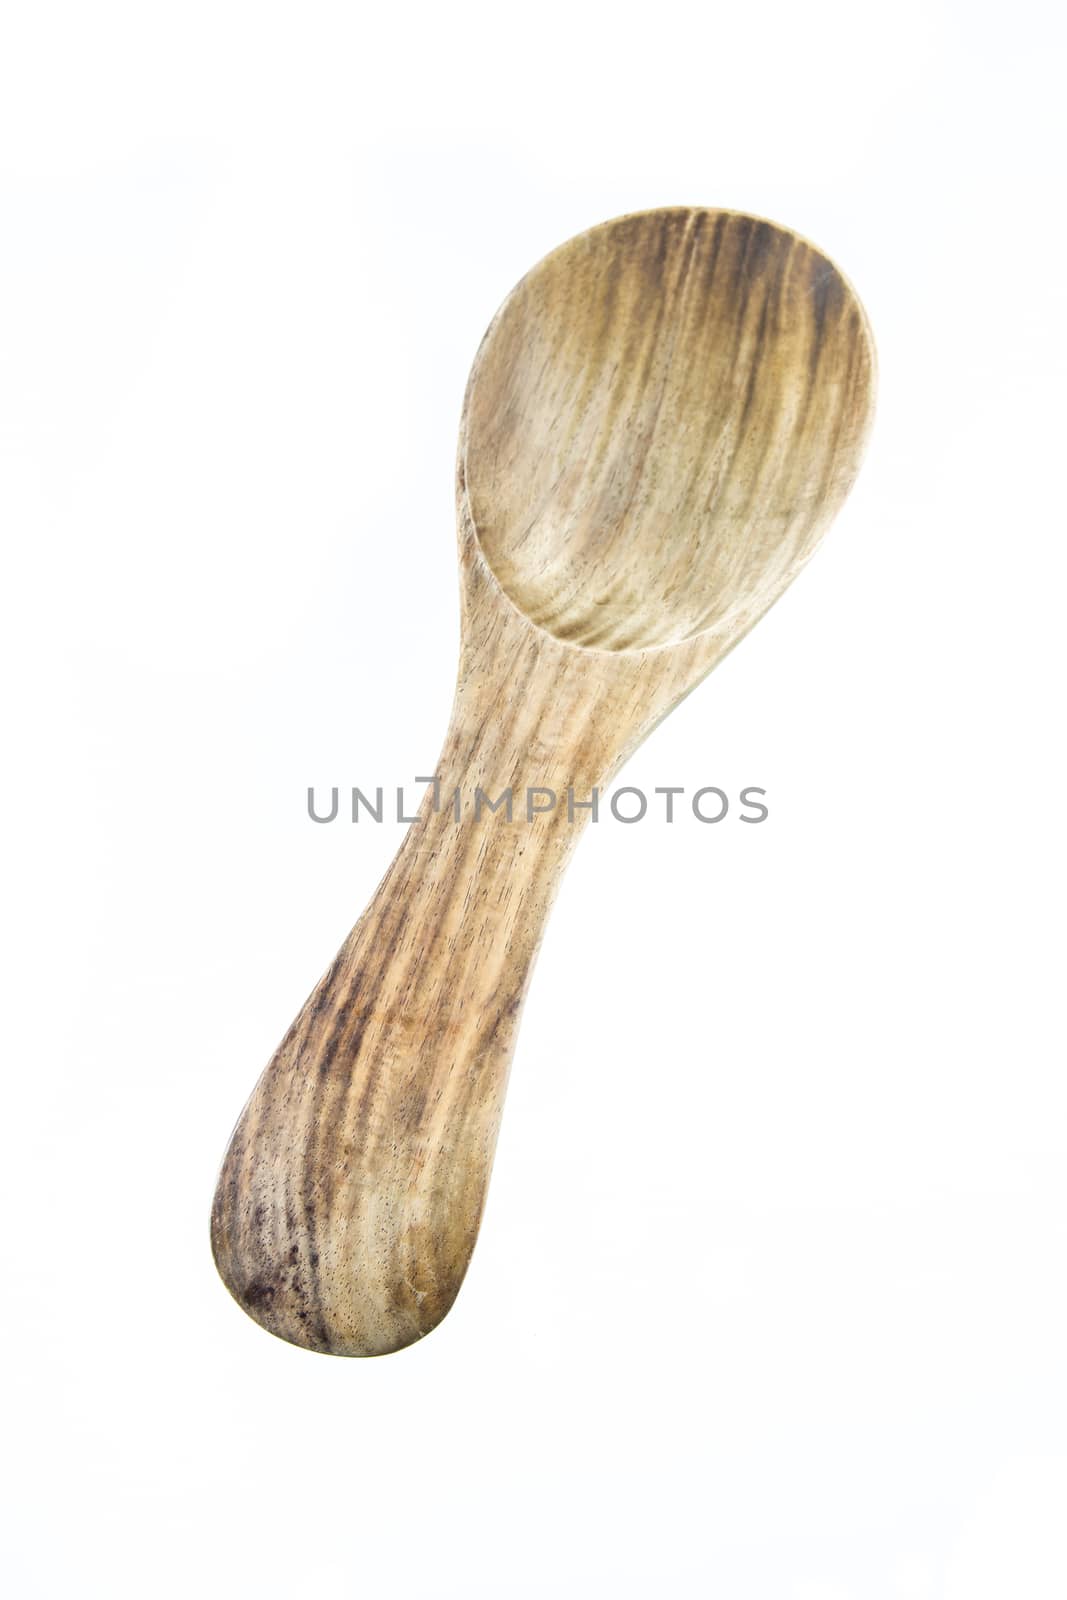 wooden spoon by kasinv